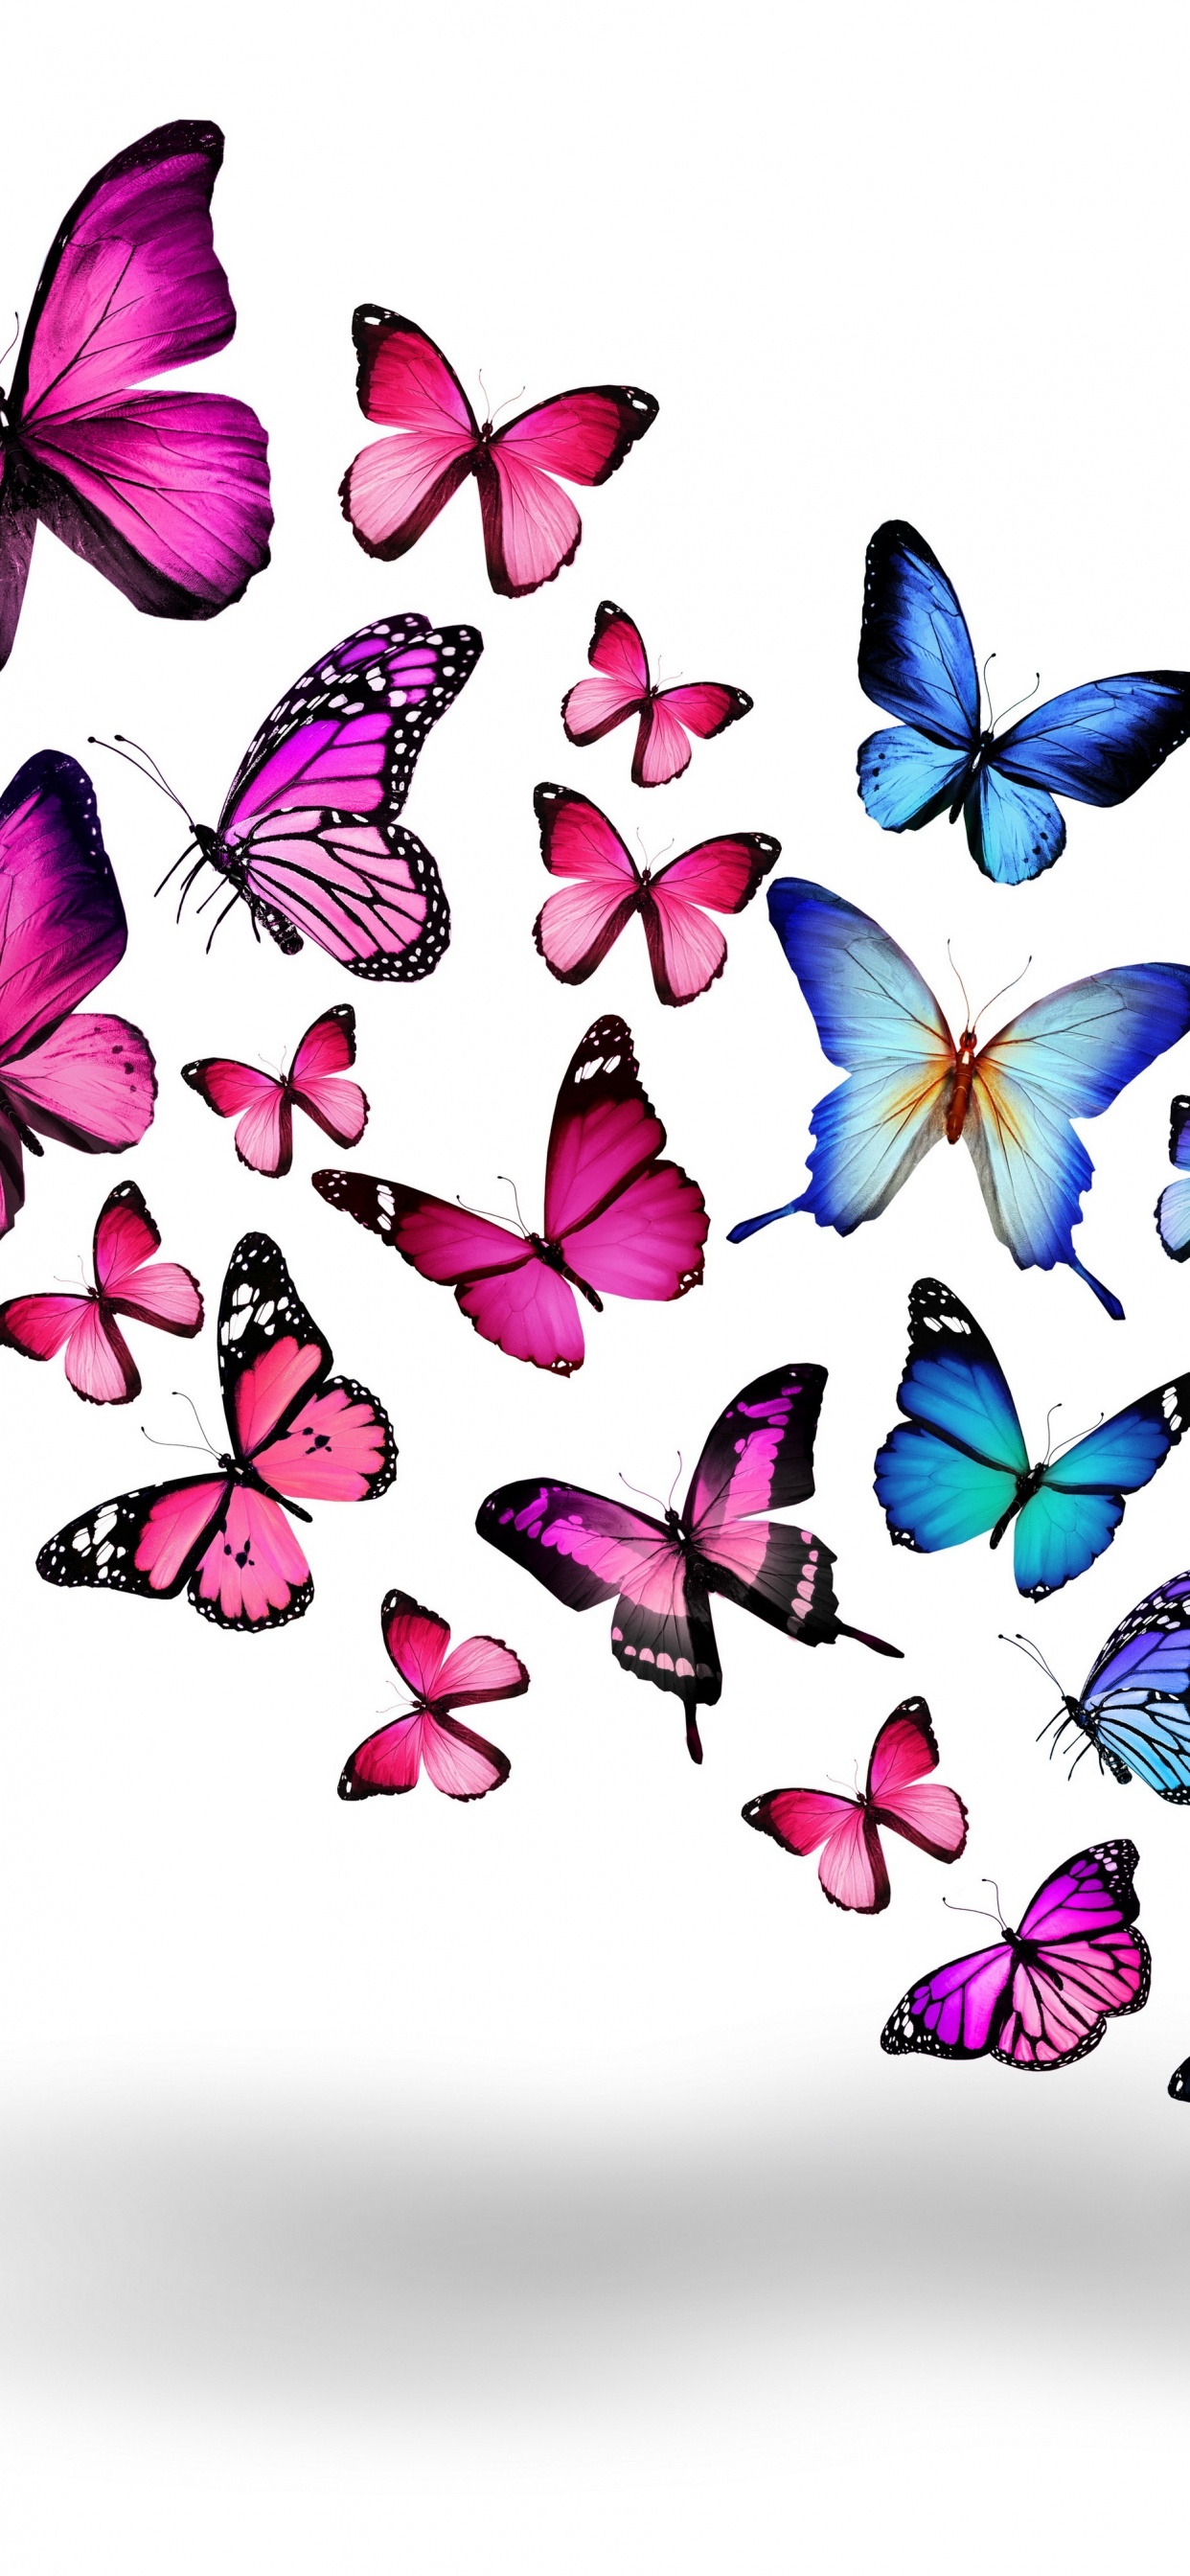 Papillons Bleus et Violets Sur Fond Blanc. Wallpaper in 1242x2688 Resolution